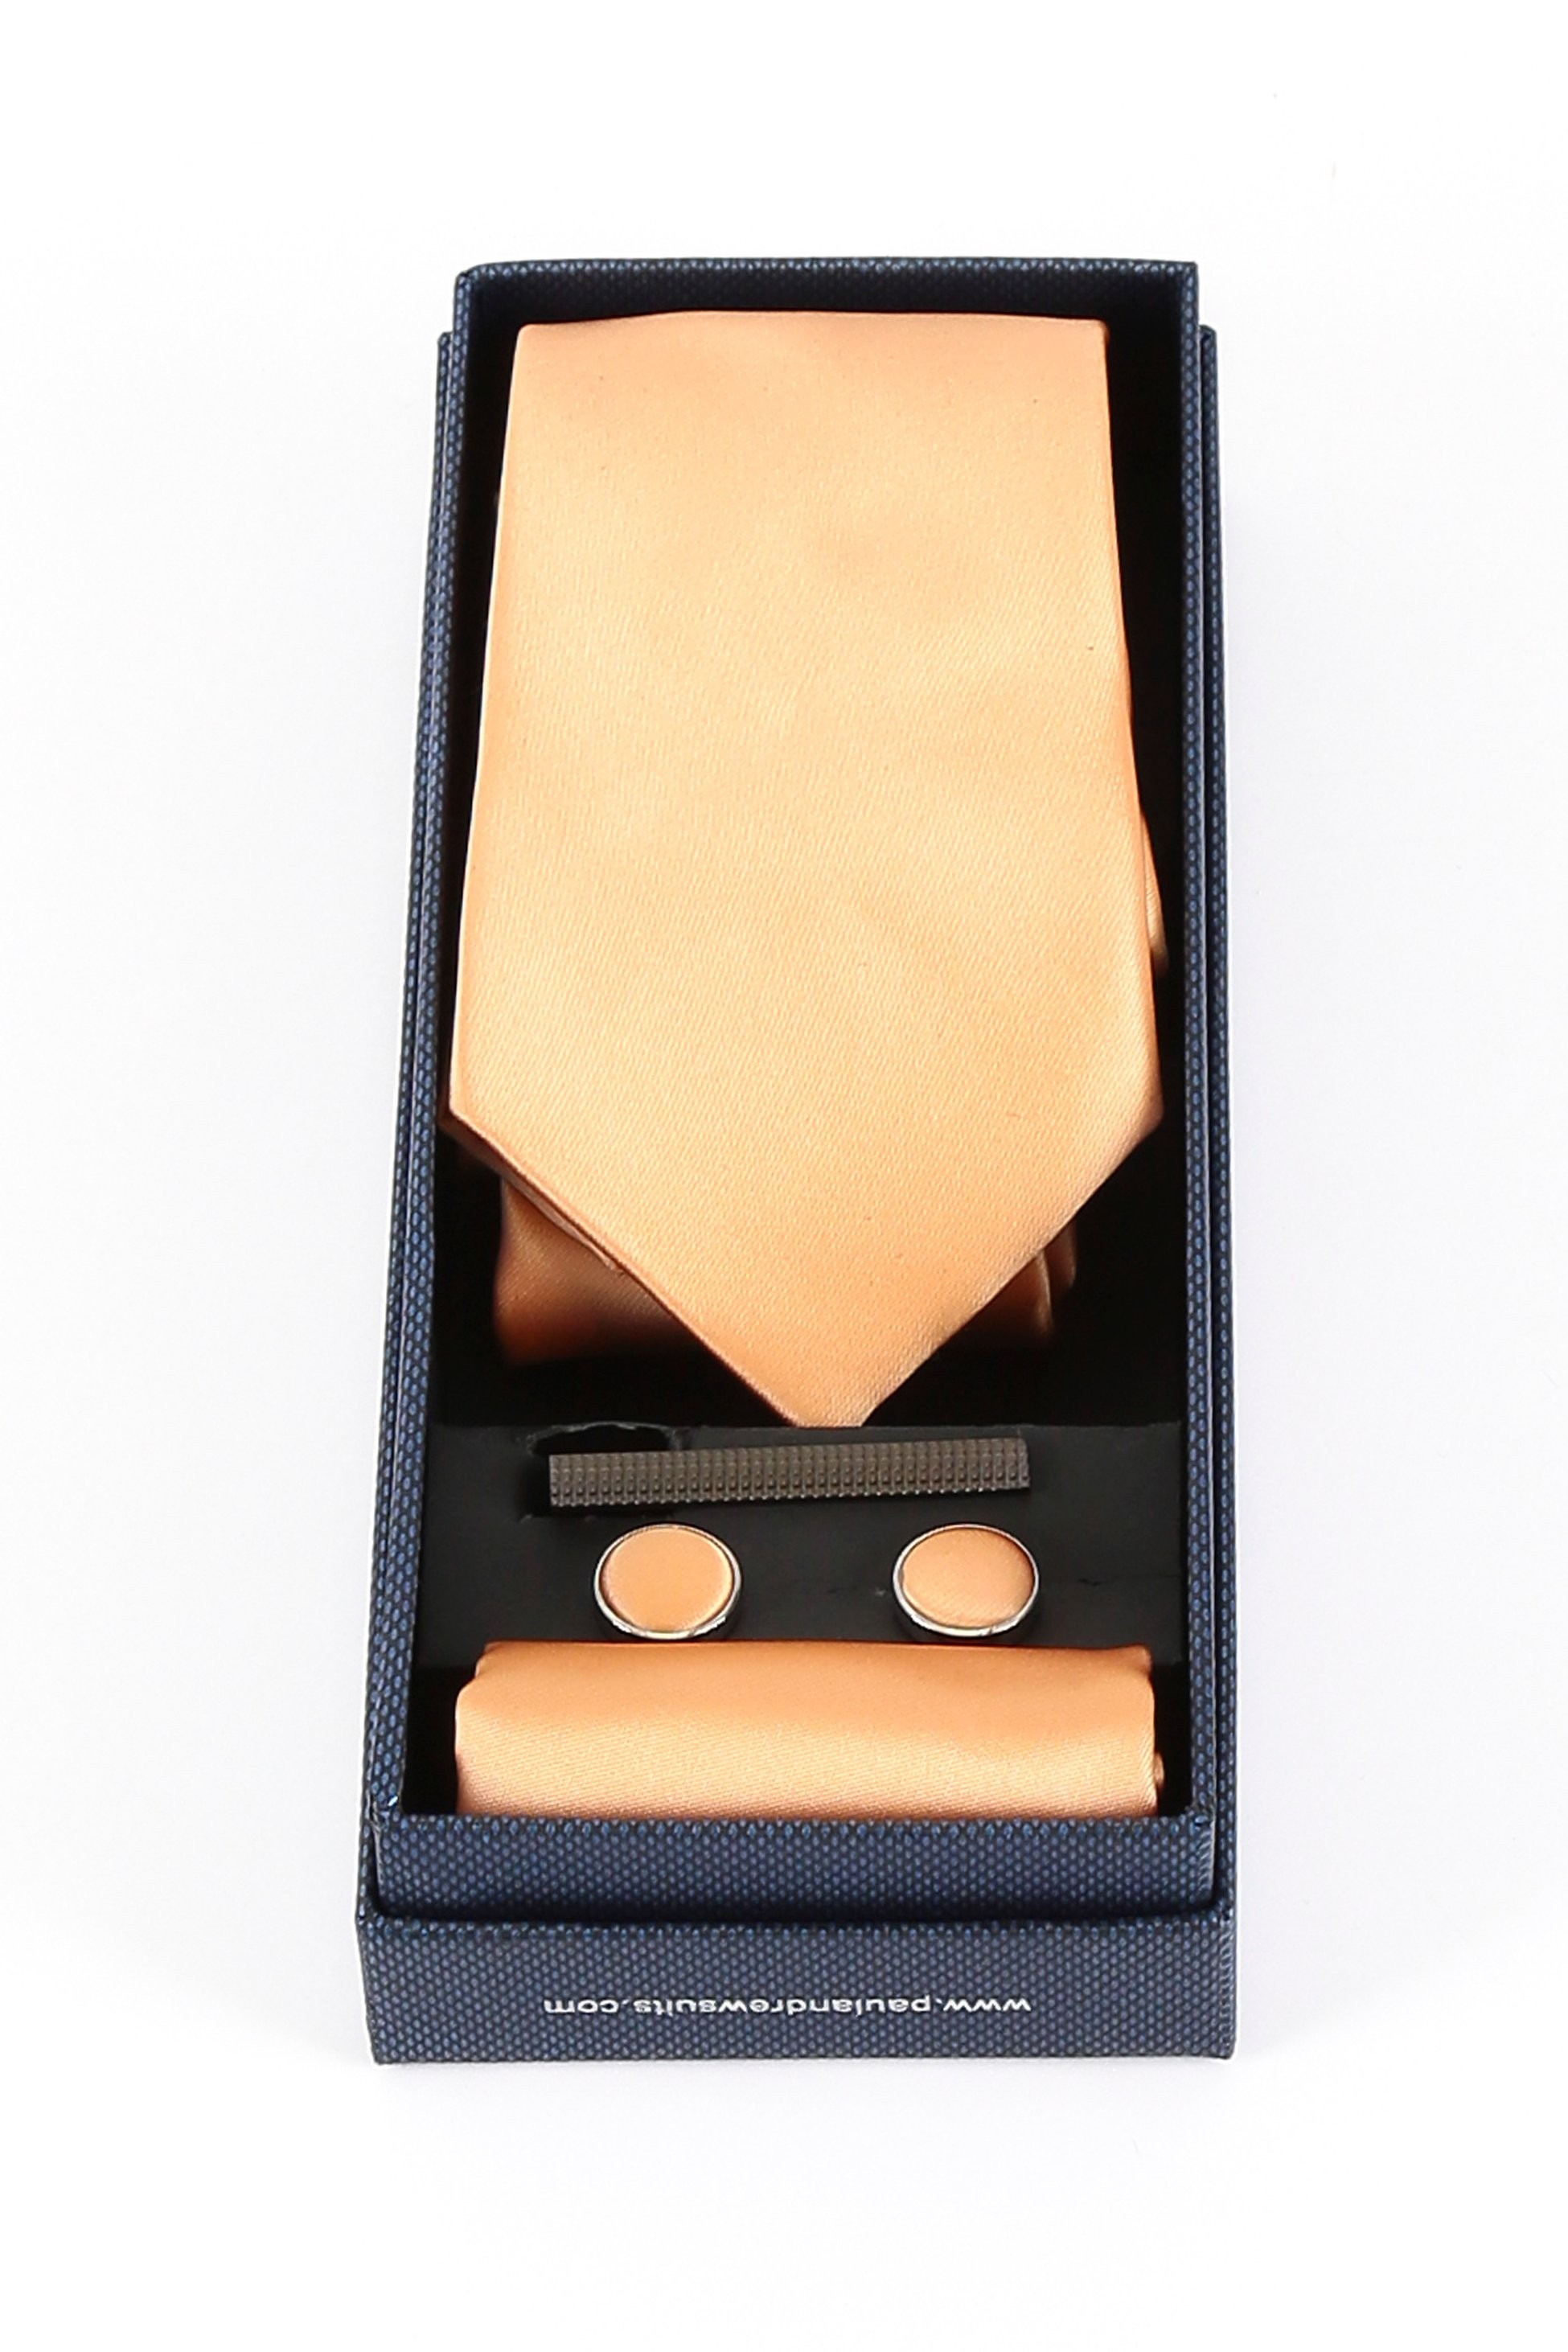 Männer Solide Satin Krawatte Manschettenknopf 4 Teilige Hochzeitsgeschenkset Set - Orange